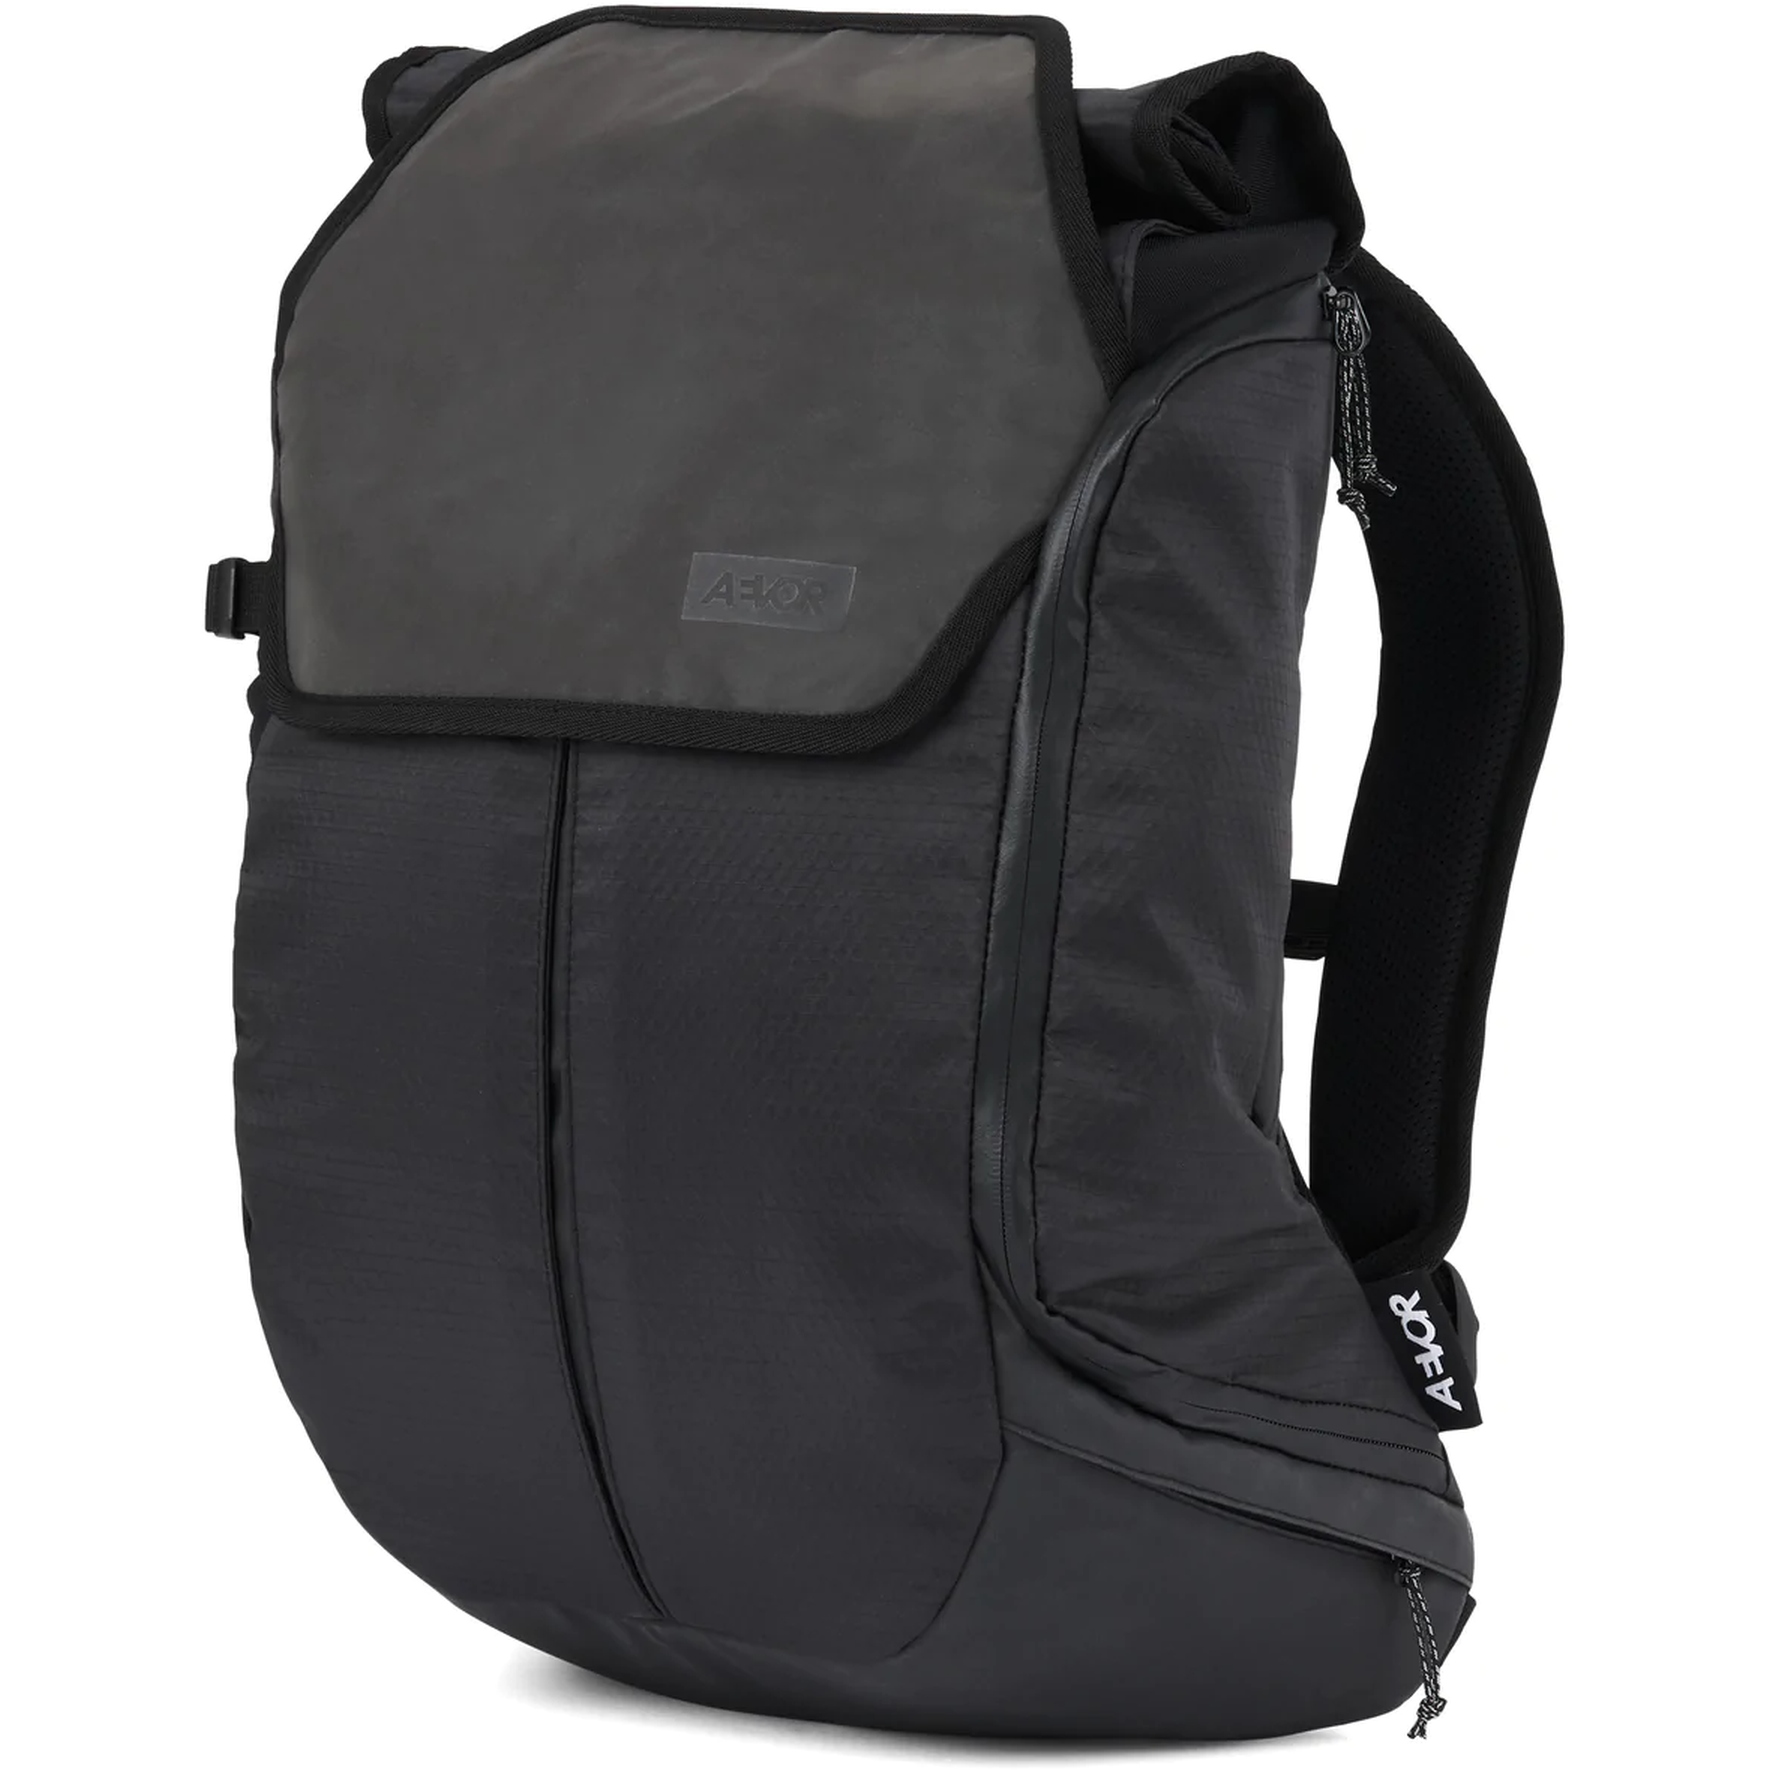 Productfoto van AEVOR Bike Pack Backpack - Proof Black